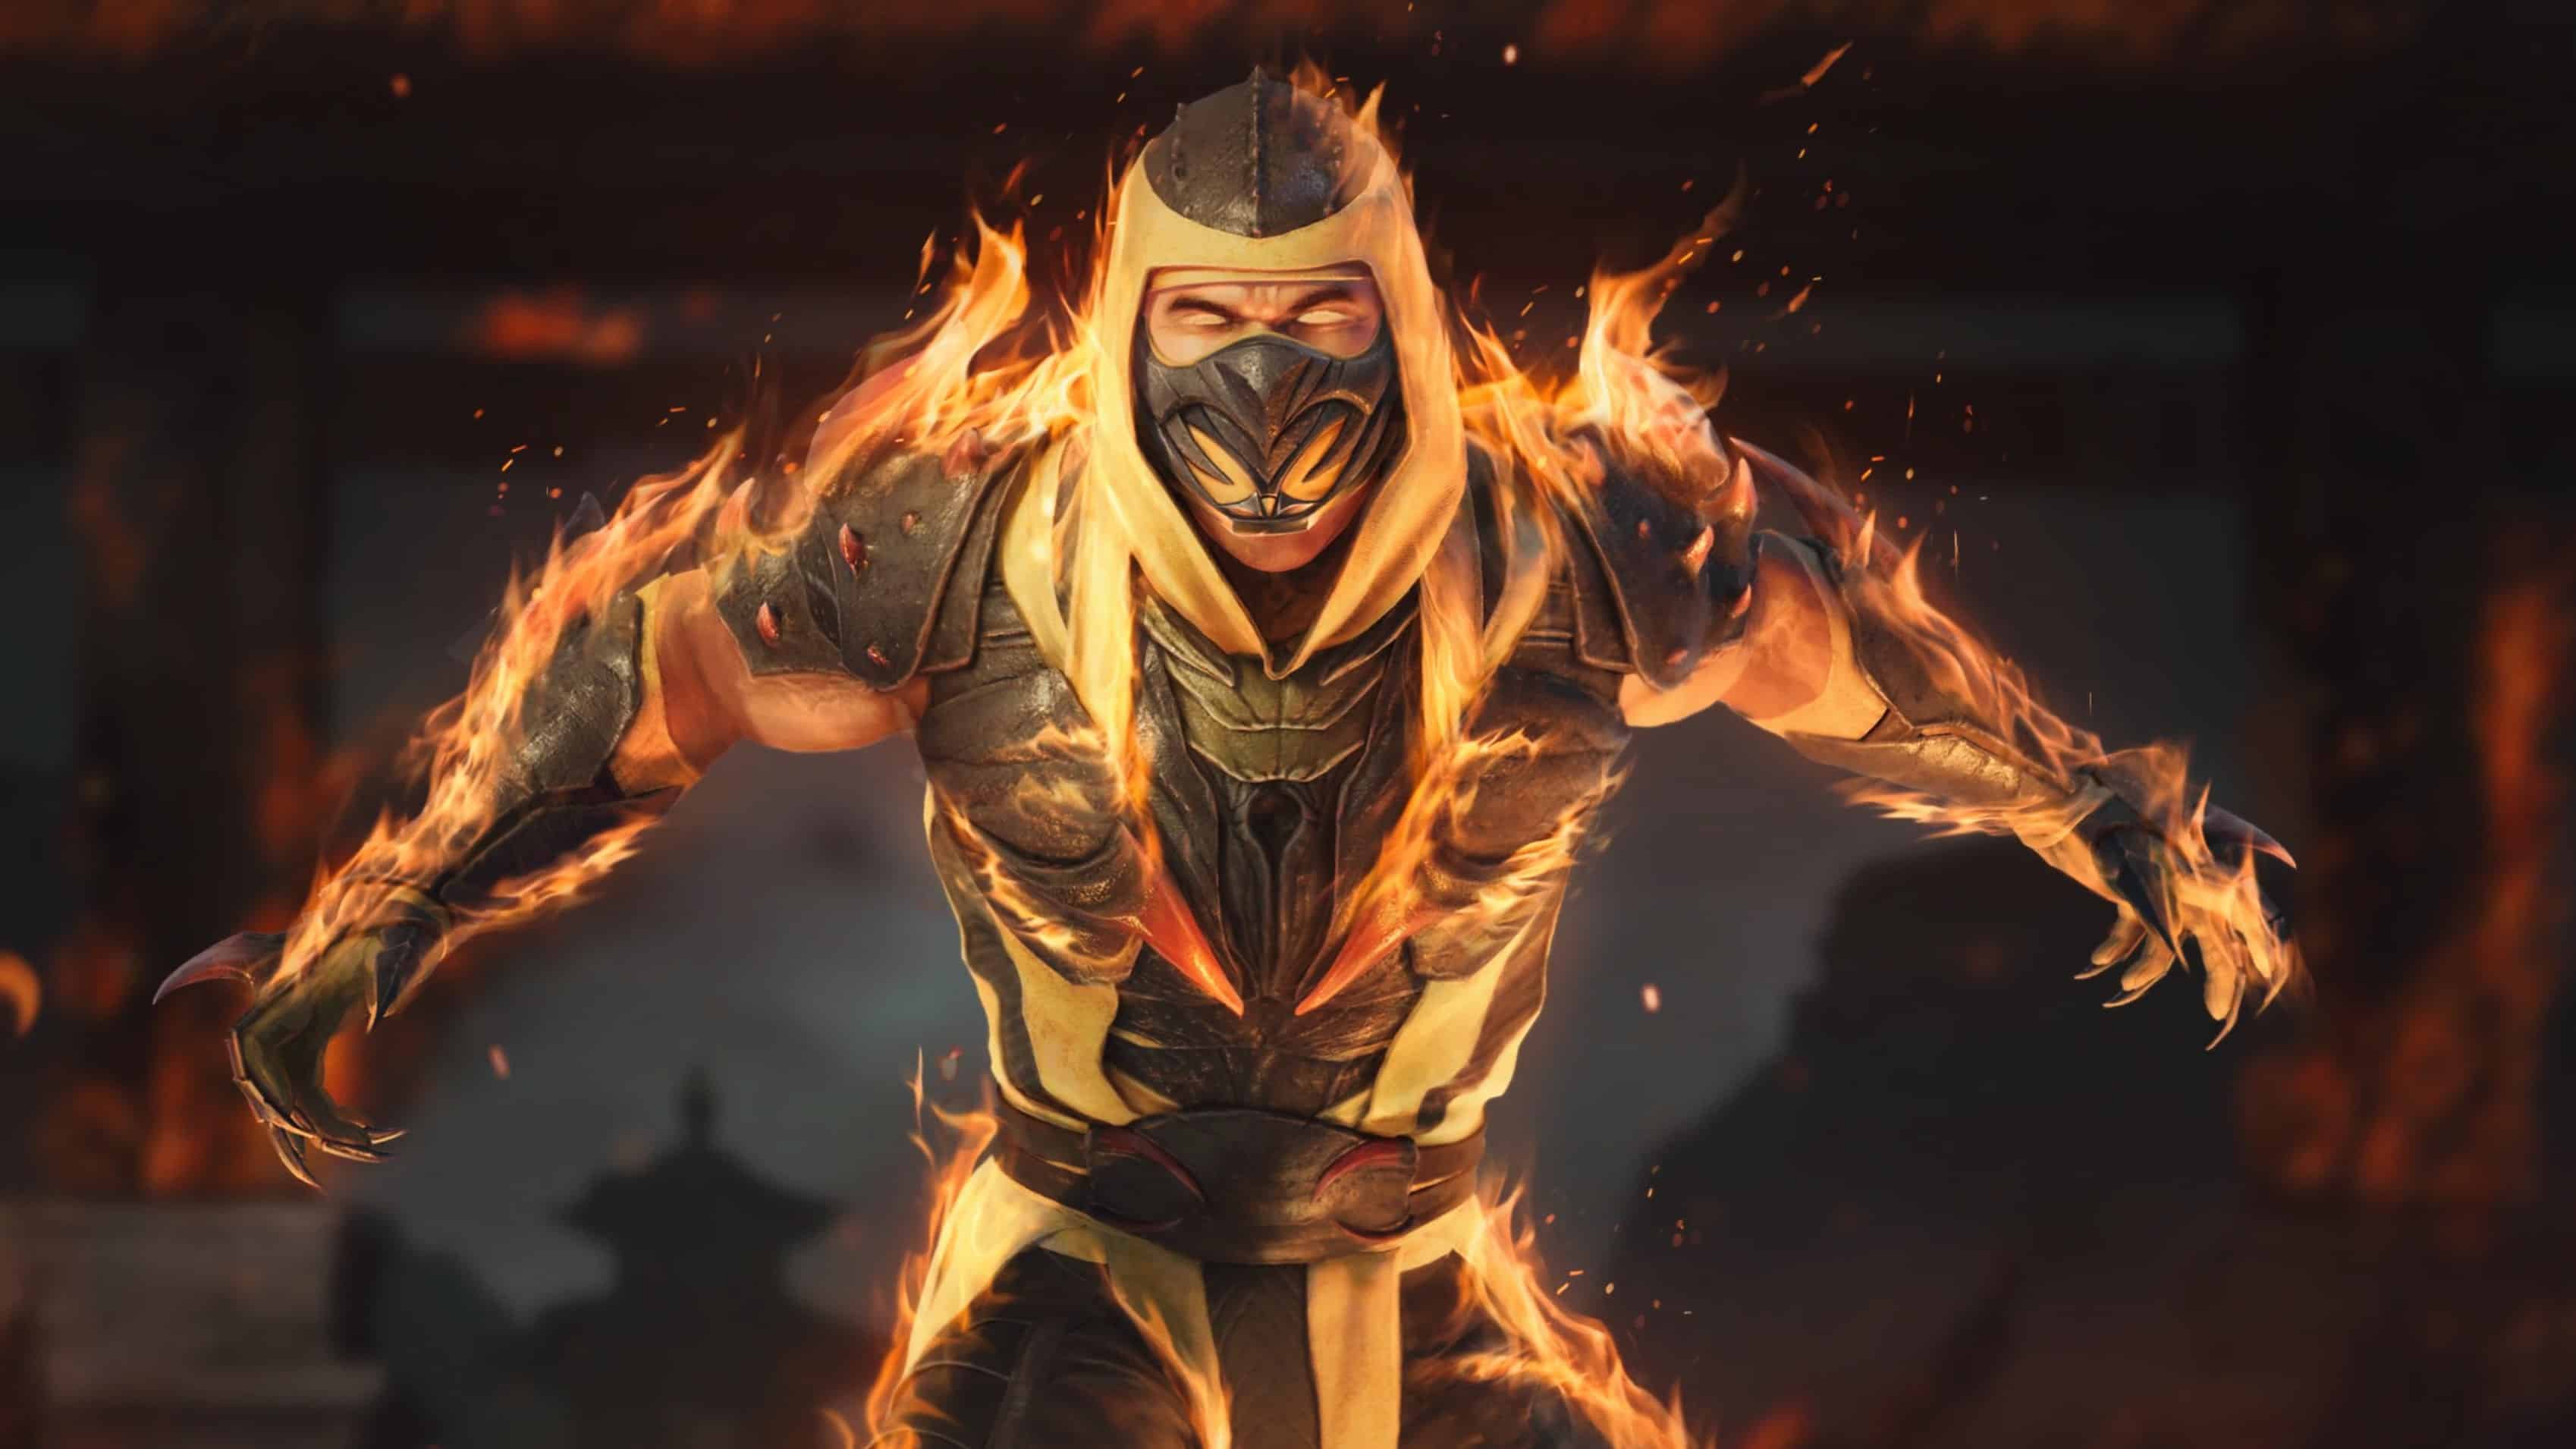 Mortal Kombat 1 [Arcade] - play as Shang Tsung 